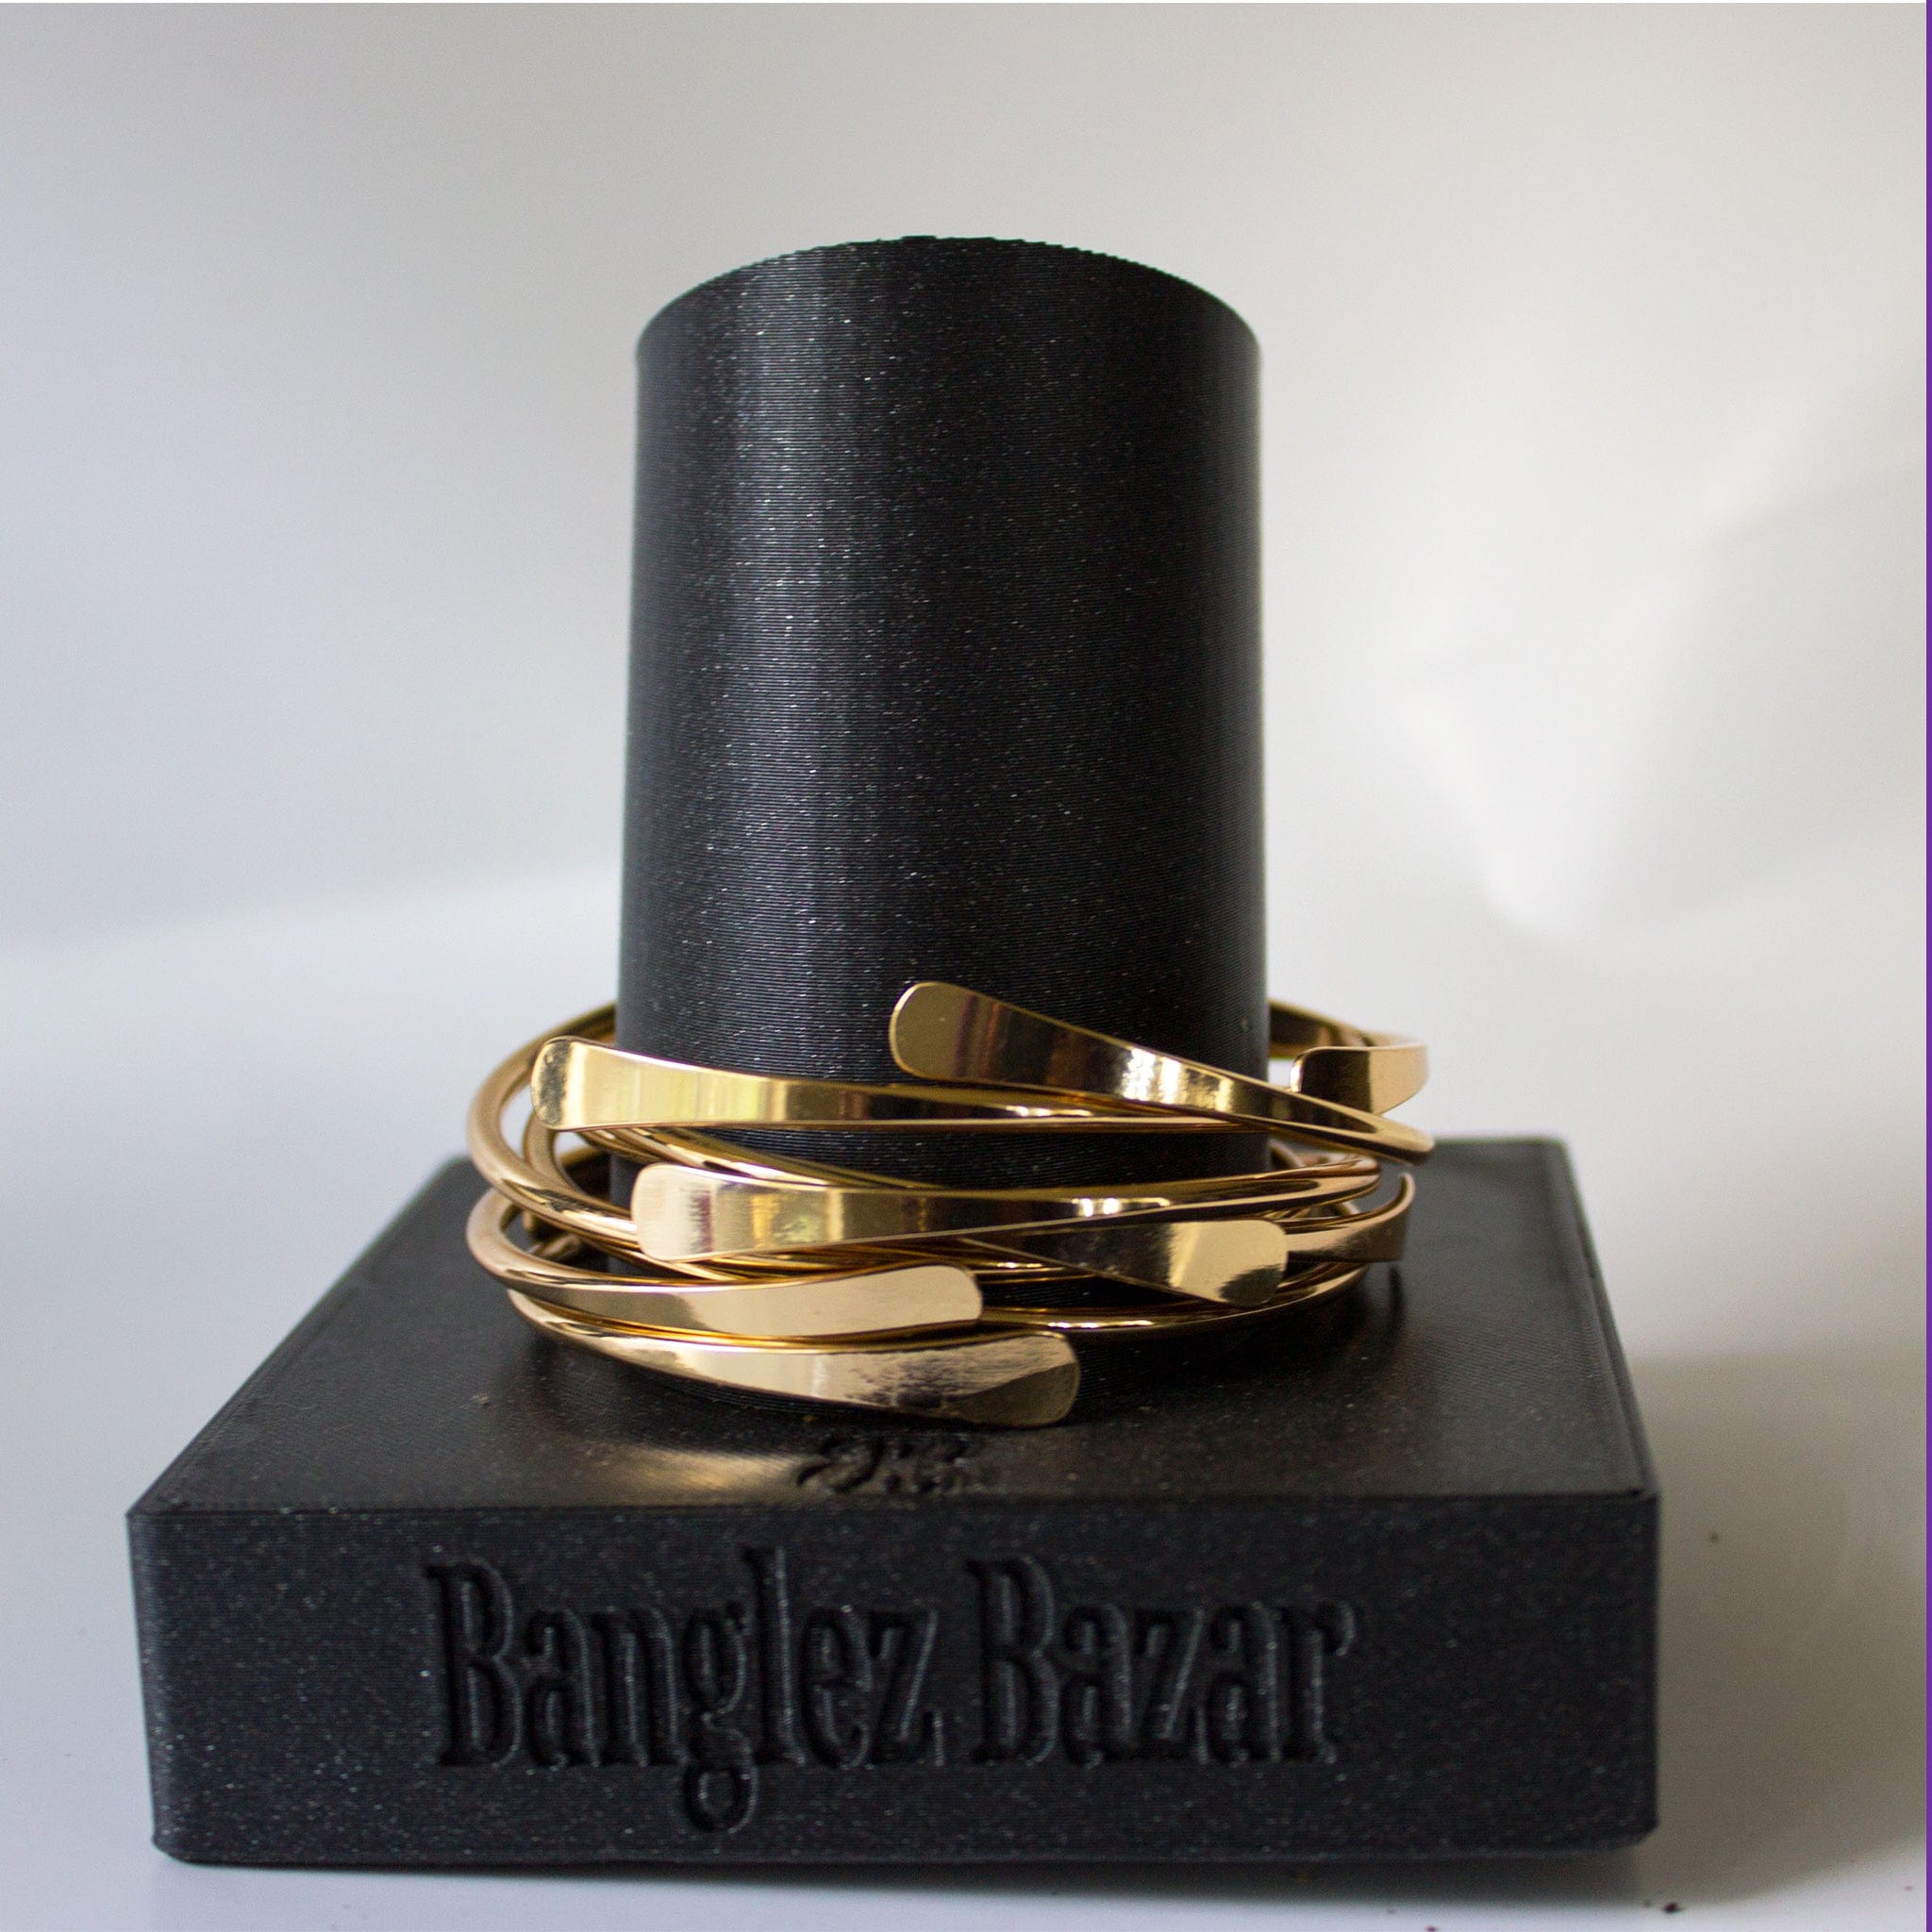 Brass Bangles | Banglez Bazar – Banglez Bazar